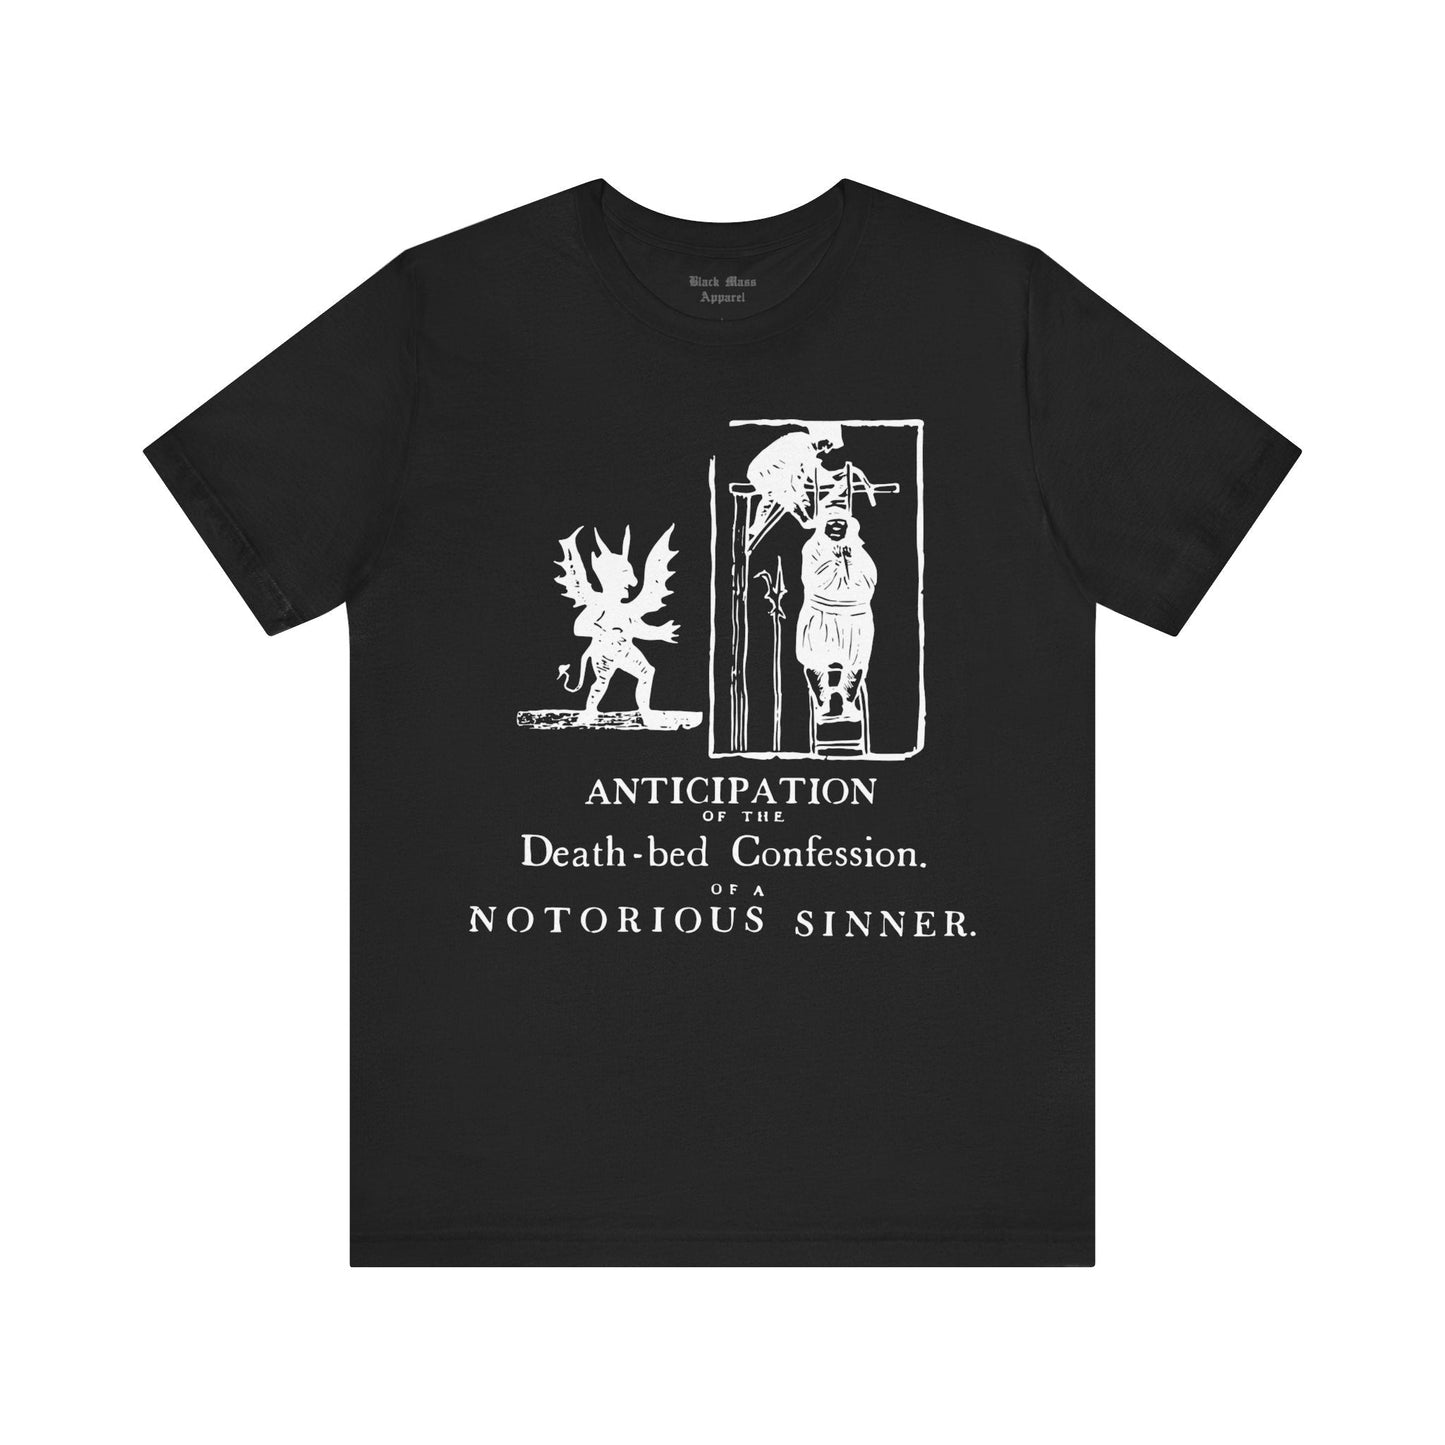 Notorious Sinner - Black Mass Apparel - T - Shirt